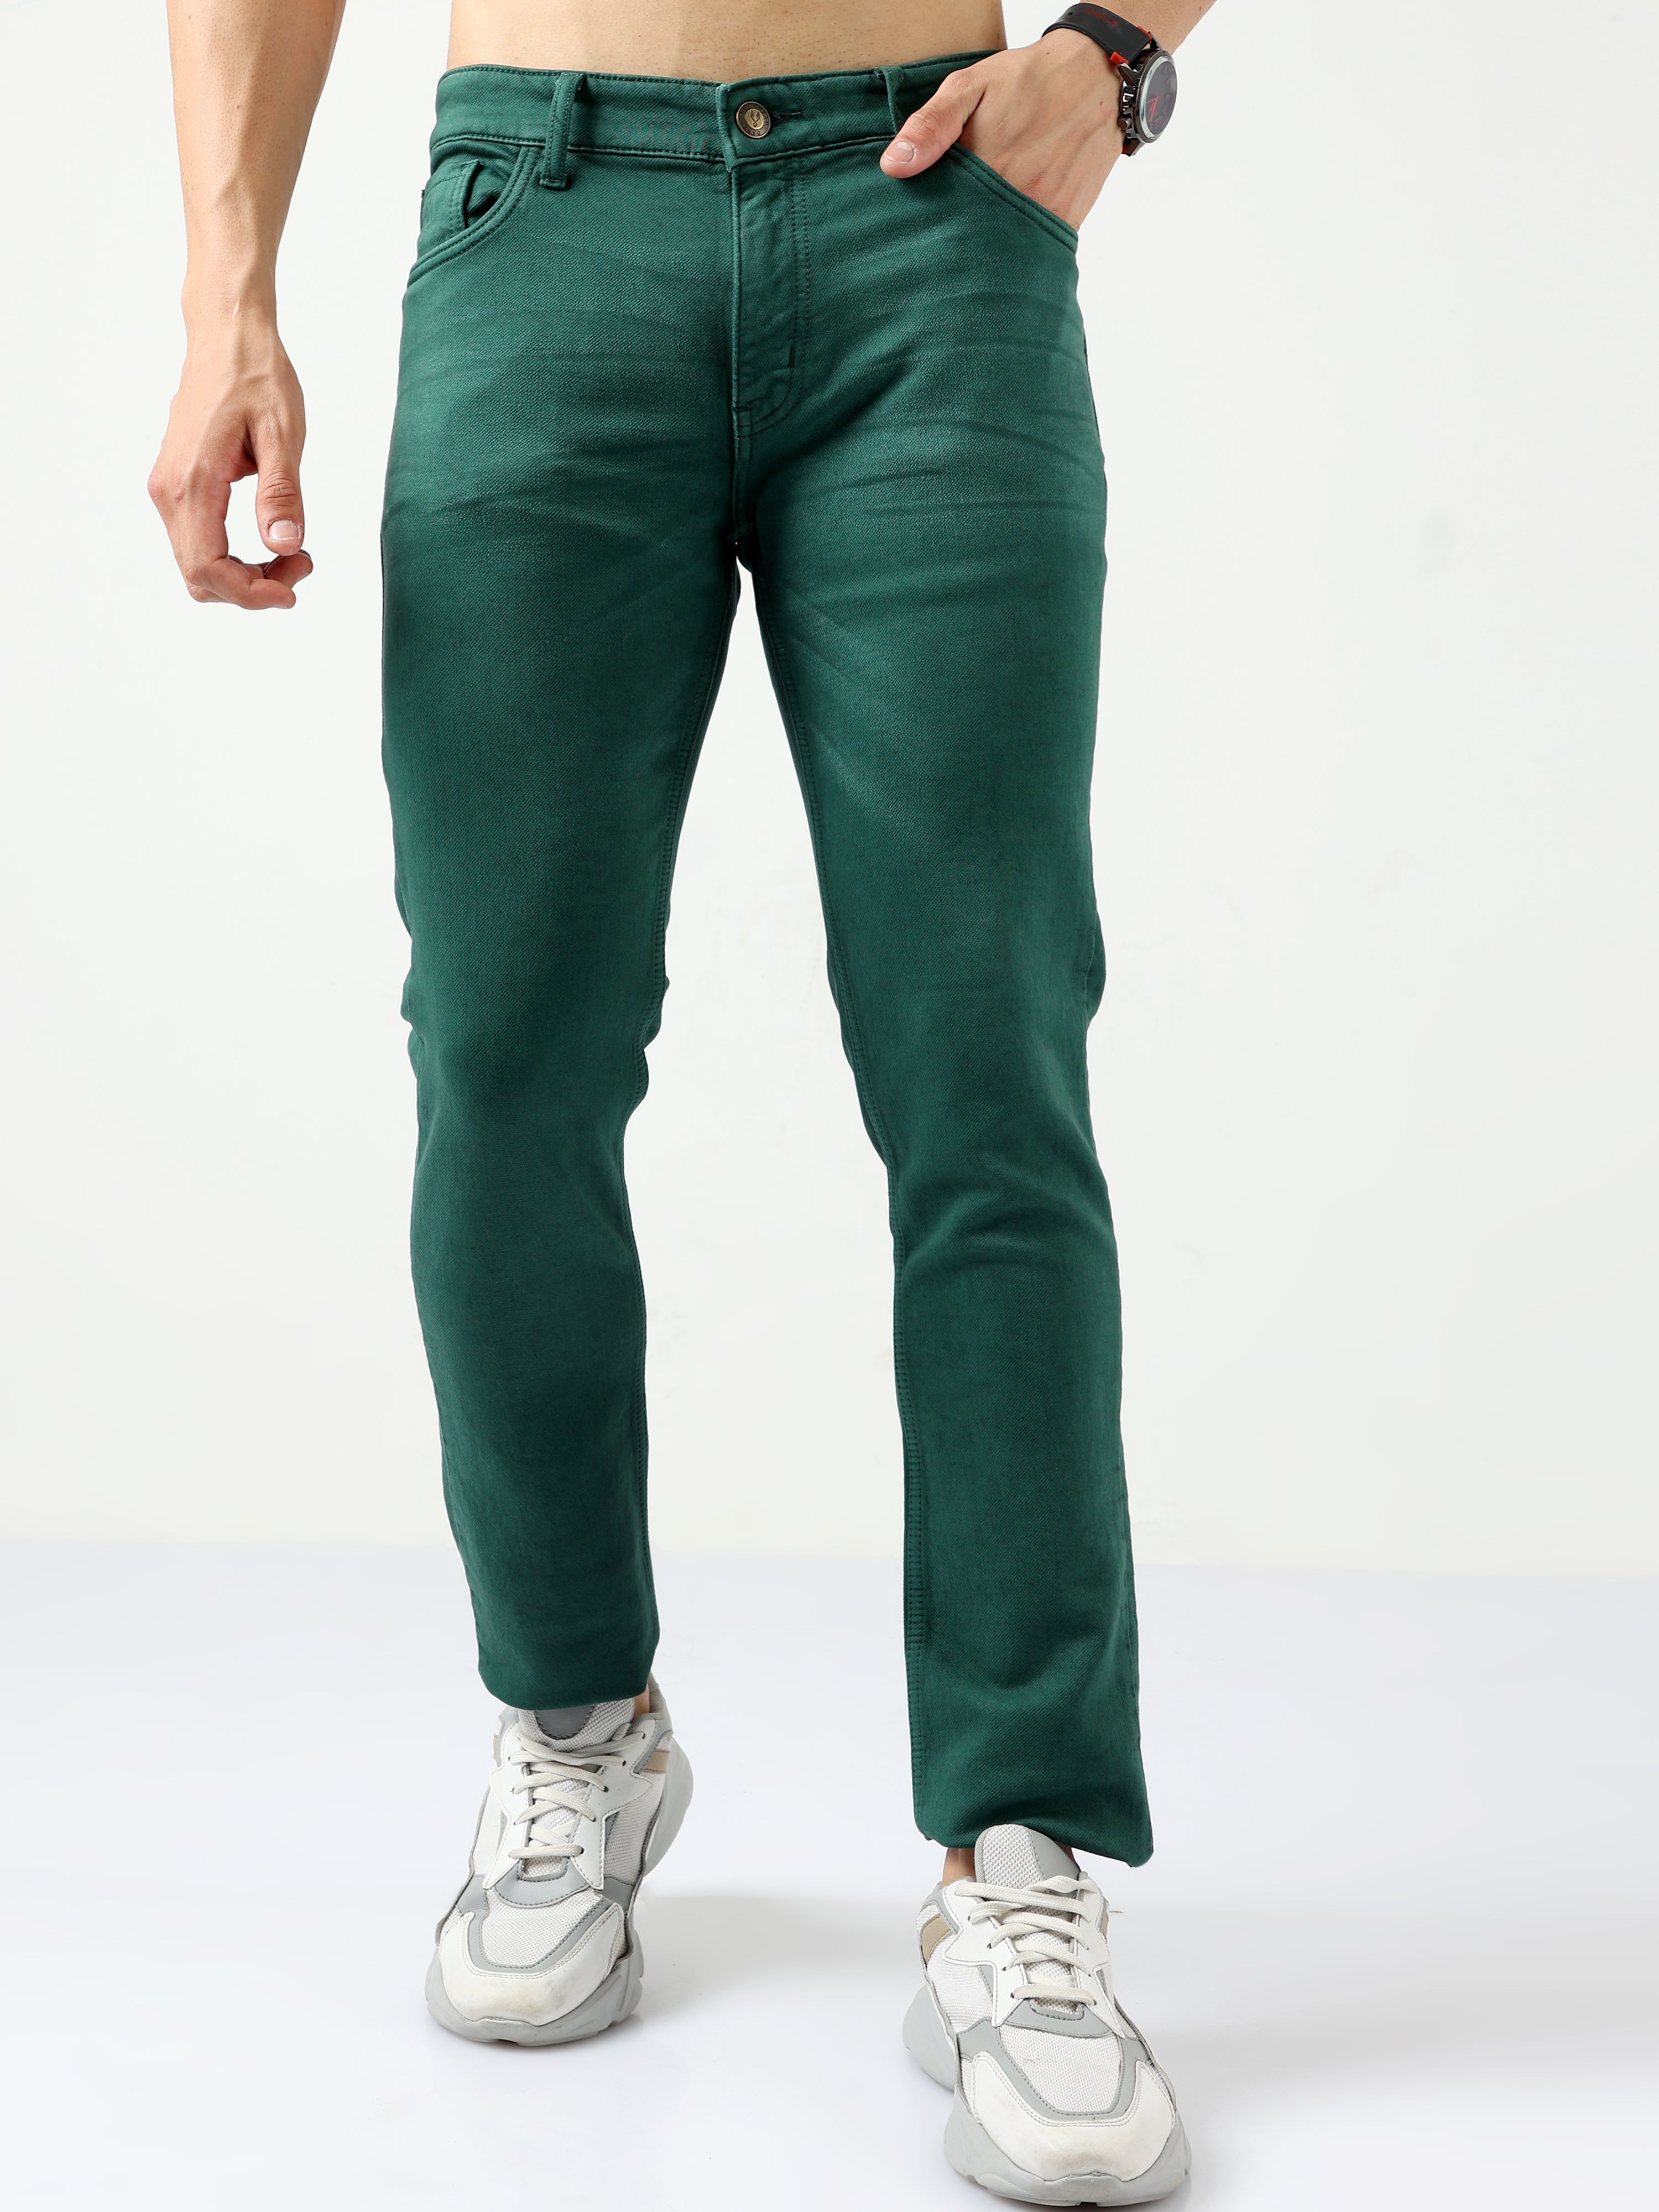 Buy U S Polo Mens Solid Dark Green Slim fit Jeans Online - Lulu Hypermarket  India